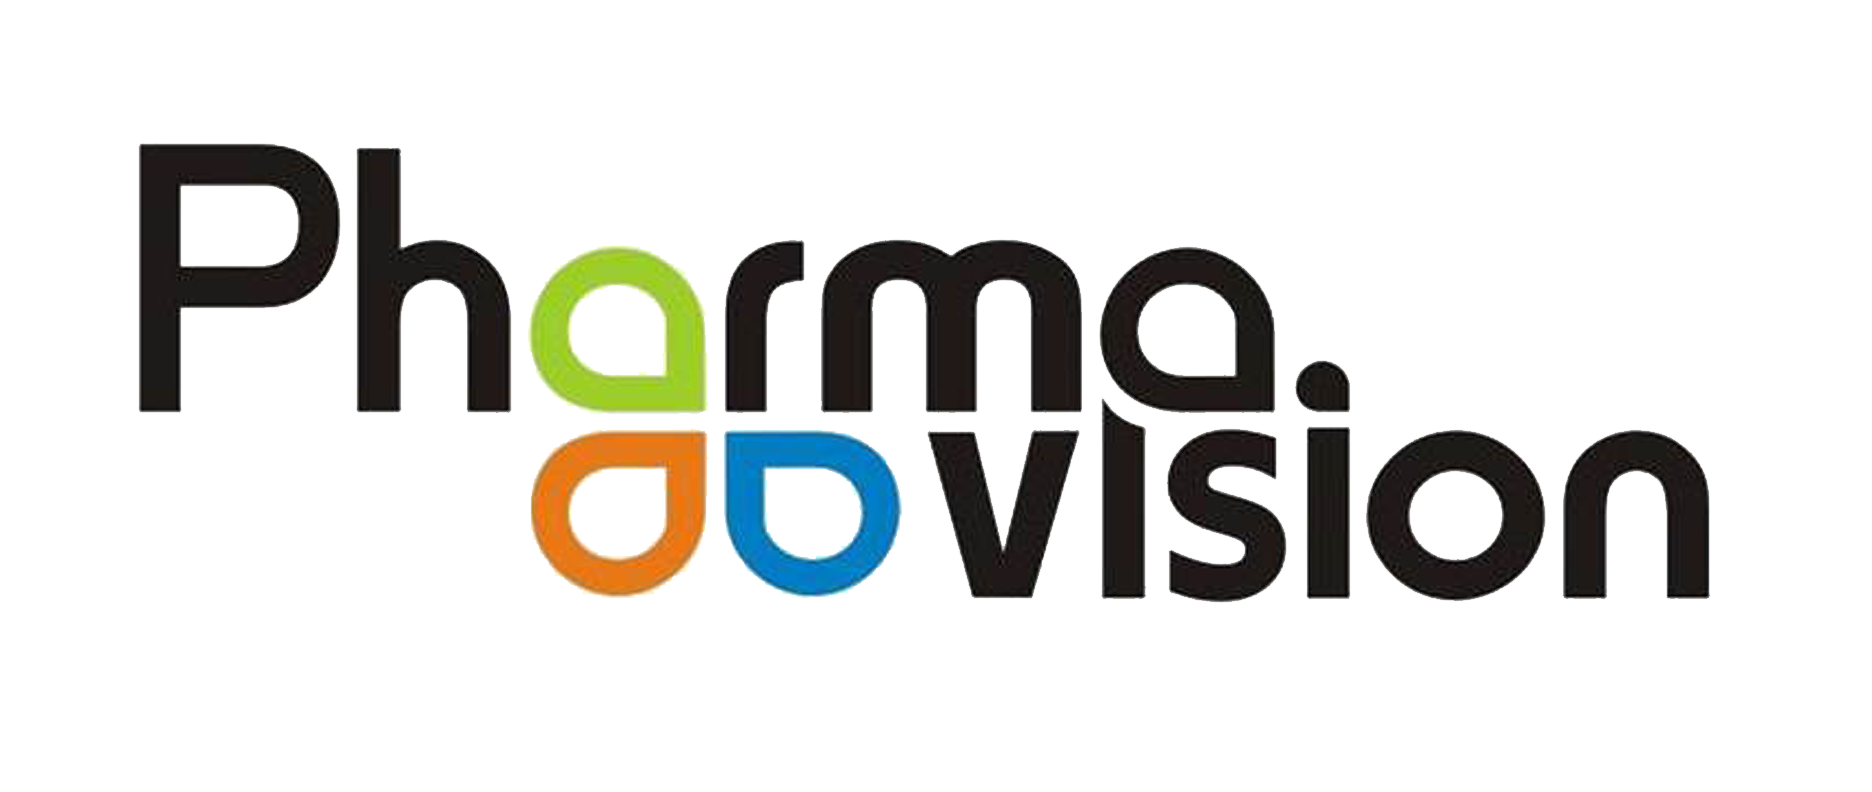 Pharma Vision Logo photo - 1